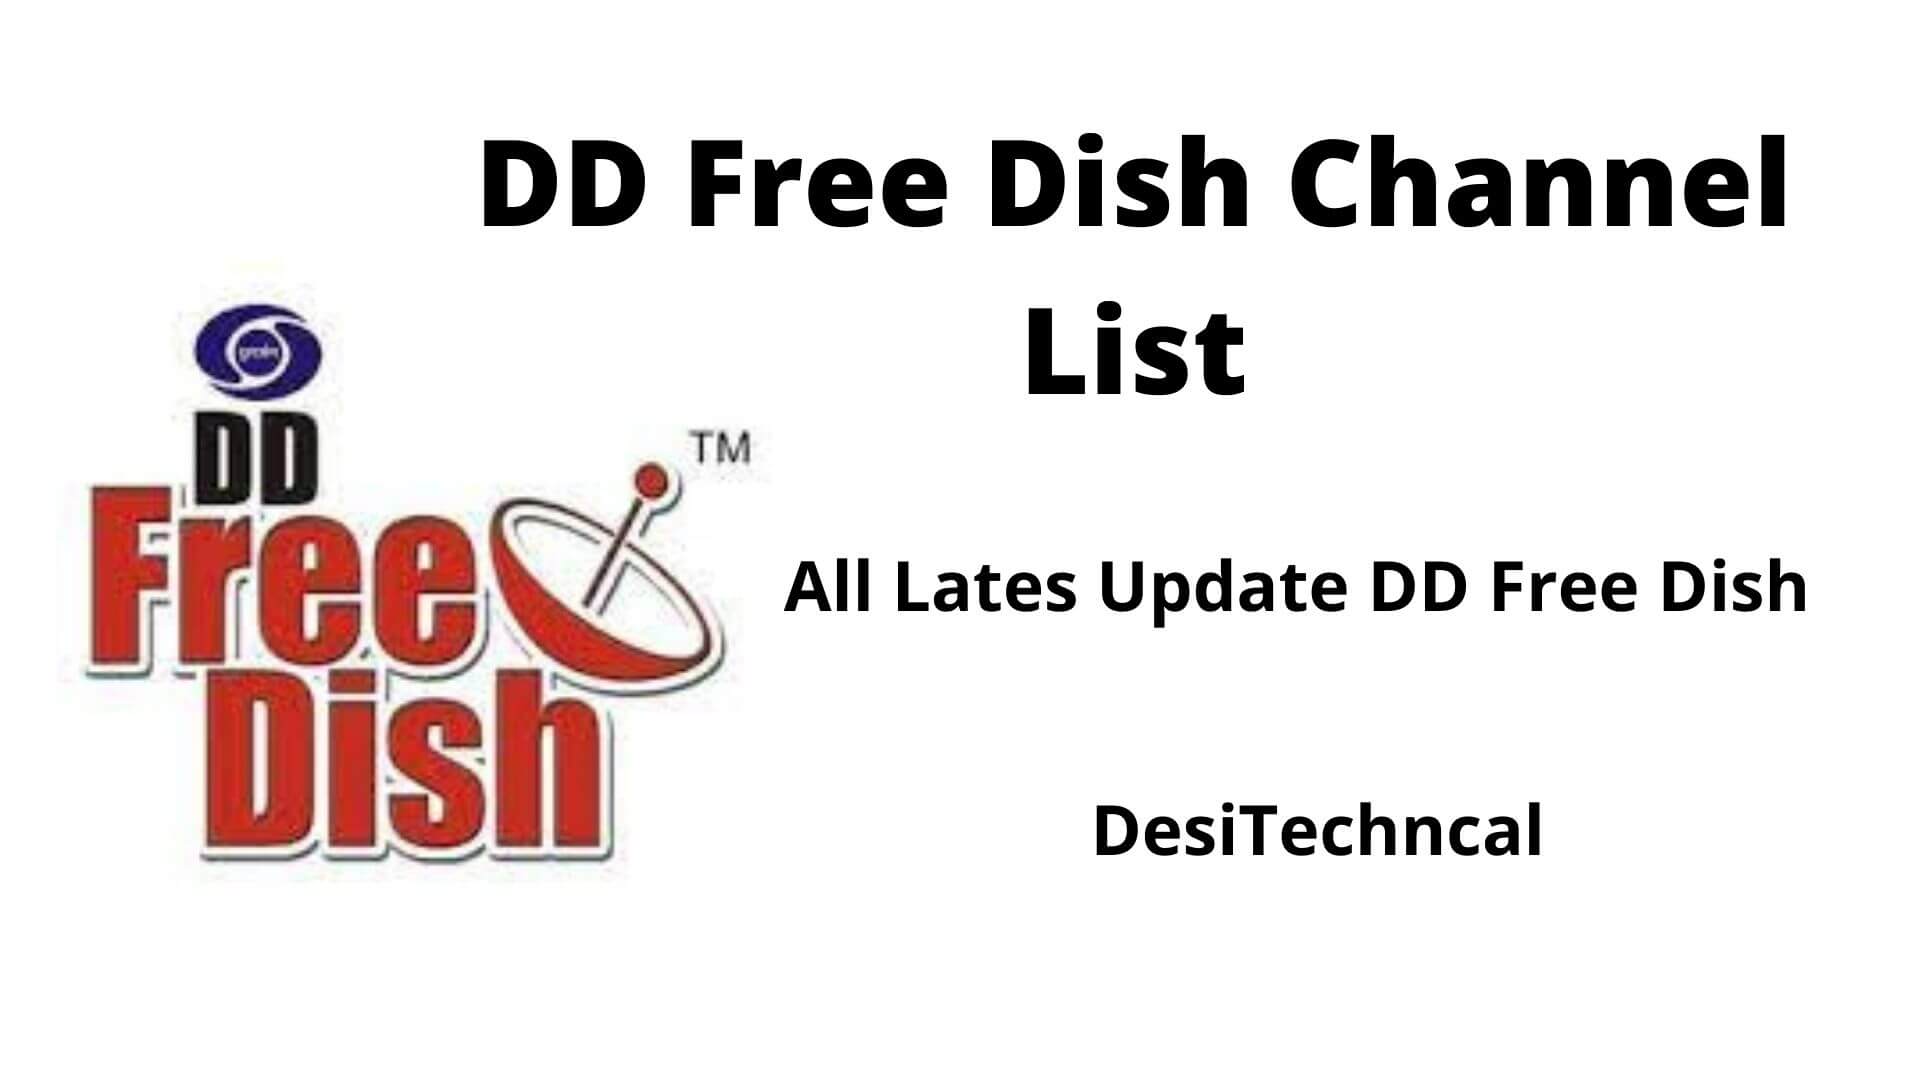 DD Free Dish Channel